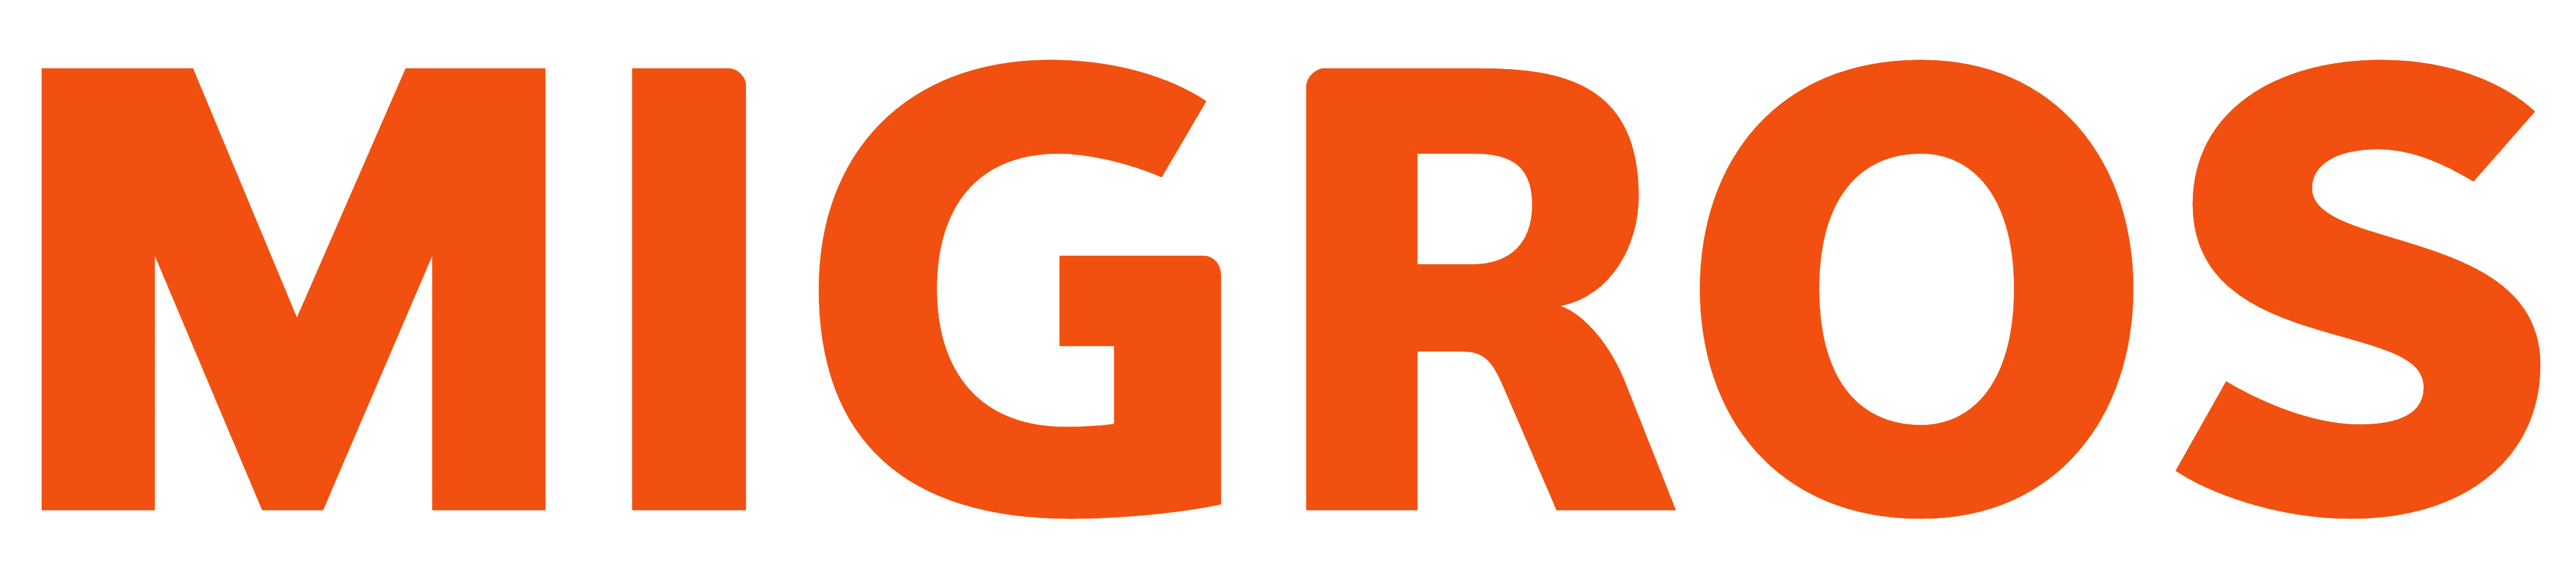 Migros logo, logotype